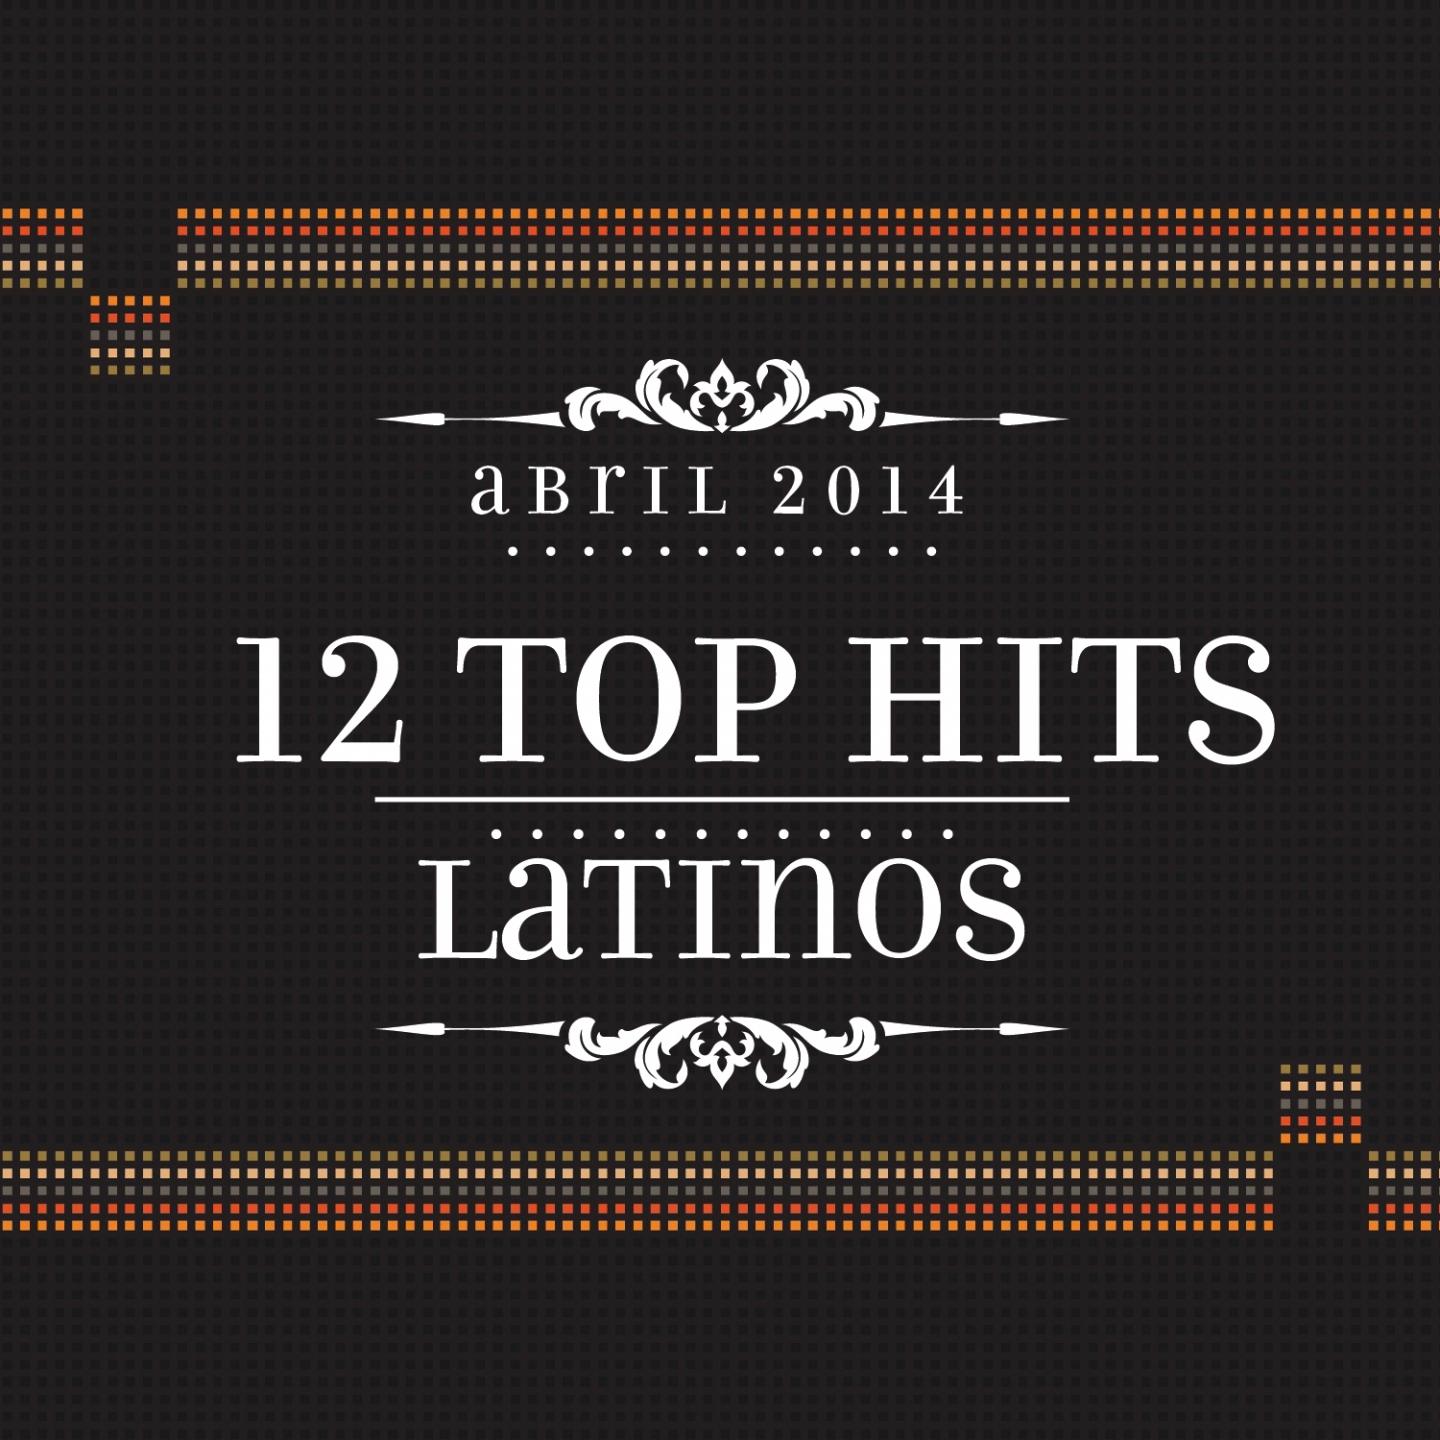 12 Top Hits Latinos: Abril 2014